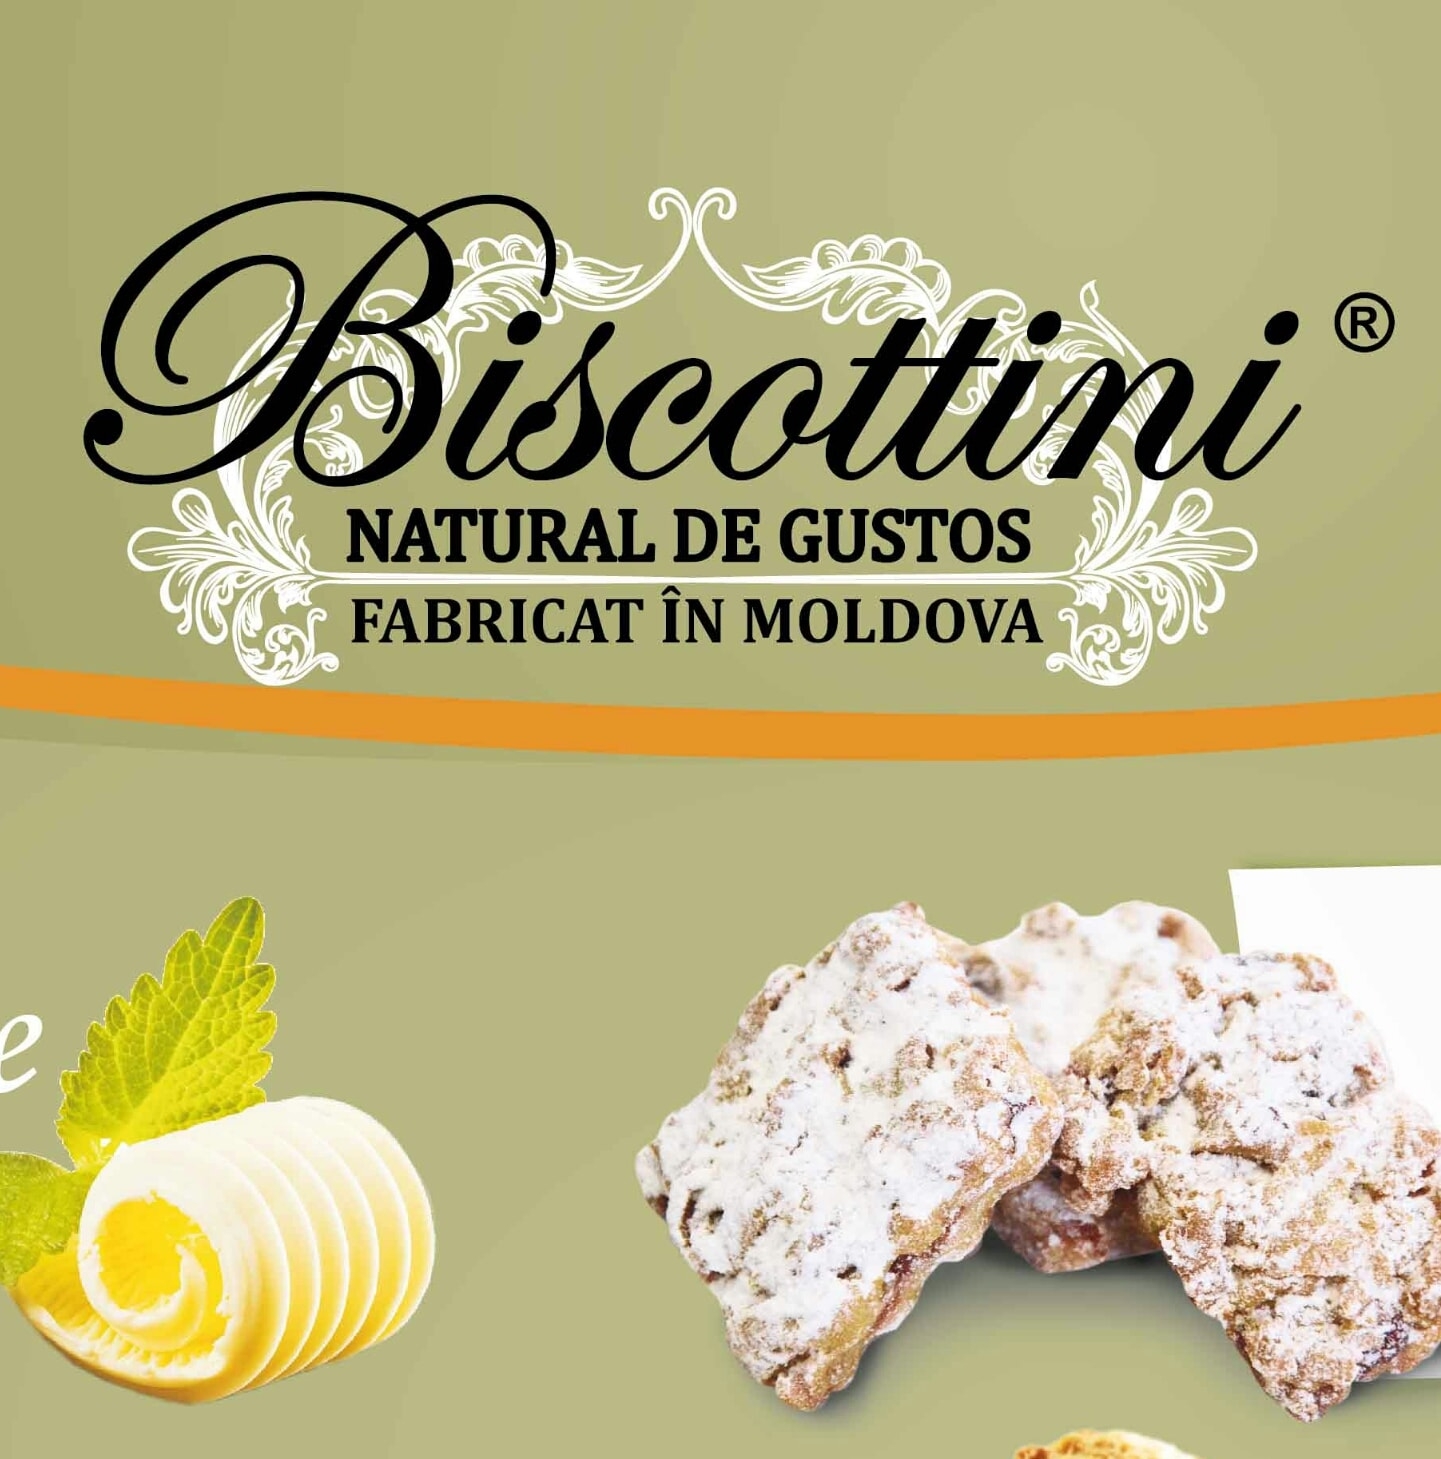 Biscottini